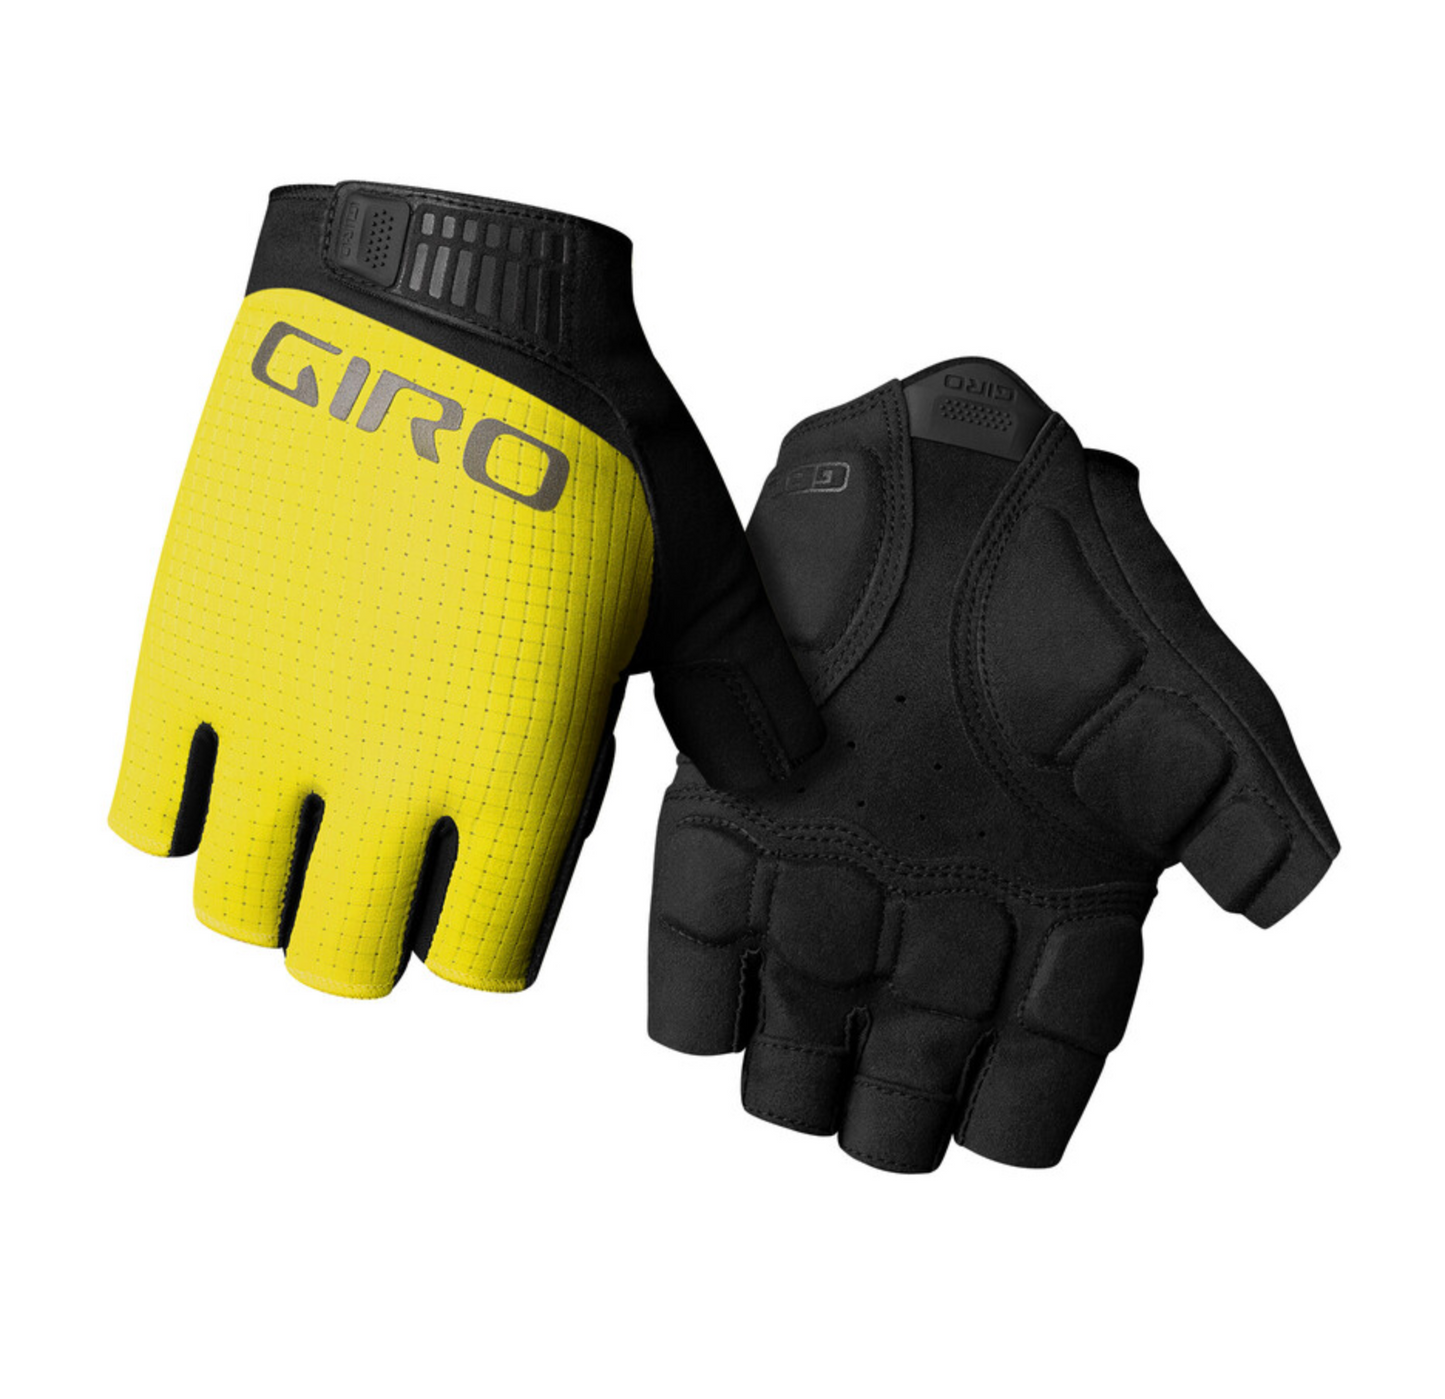 Giro Bravo II Gel Bicycle Glove